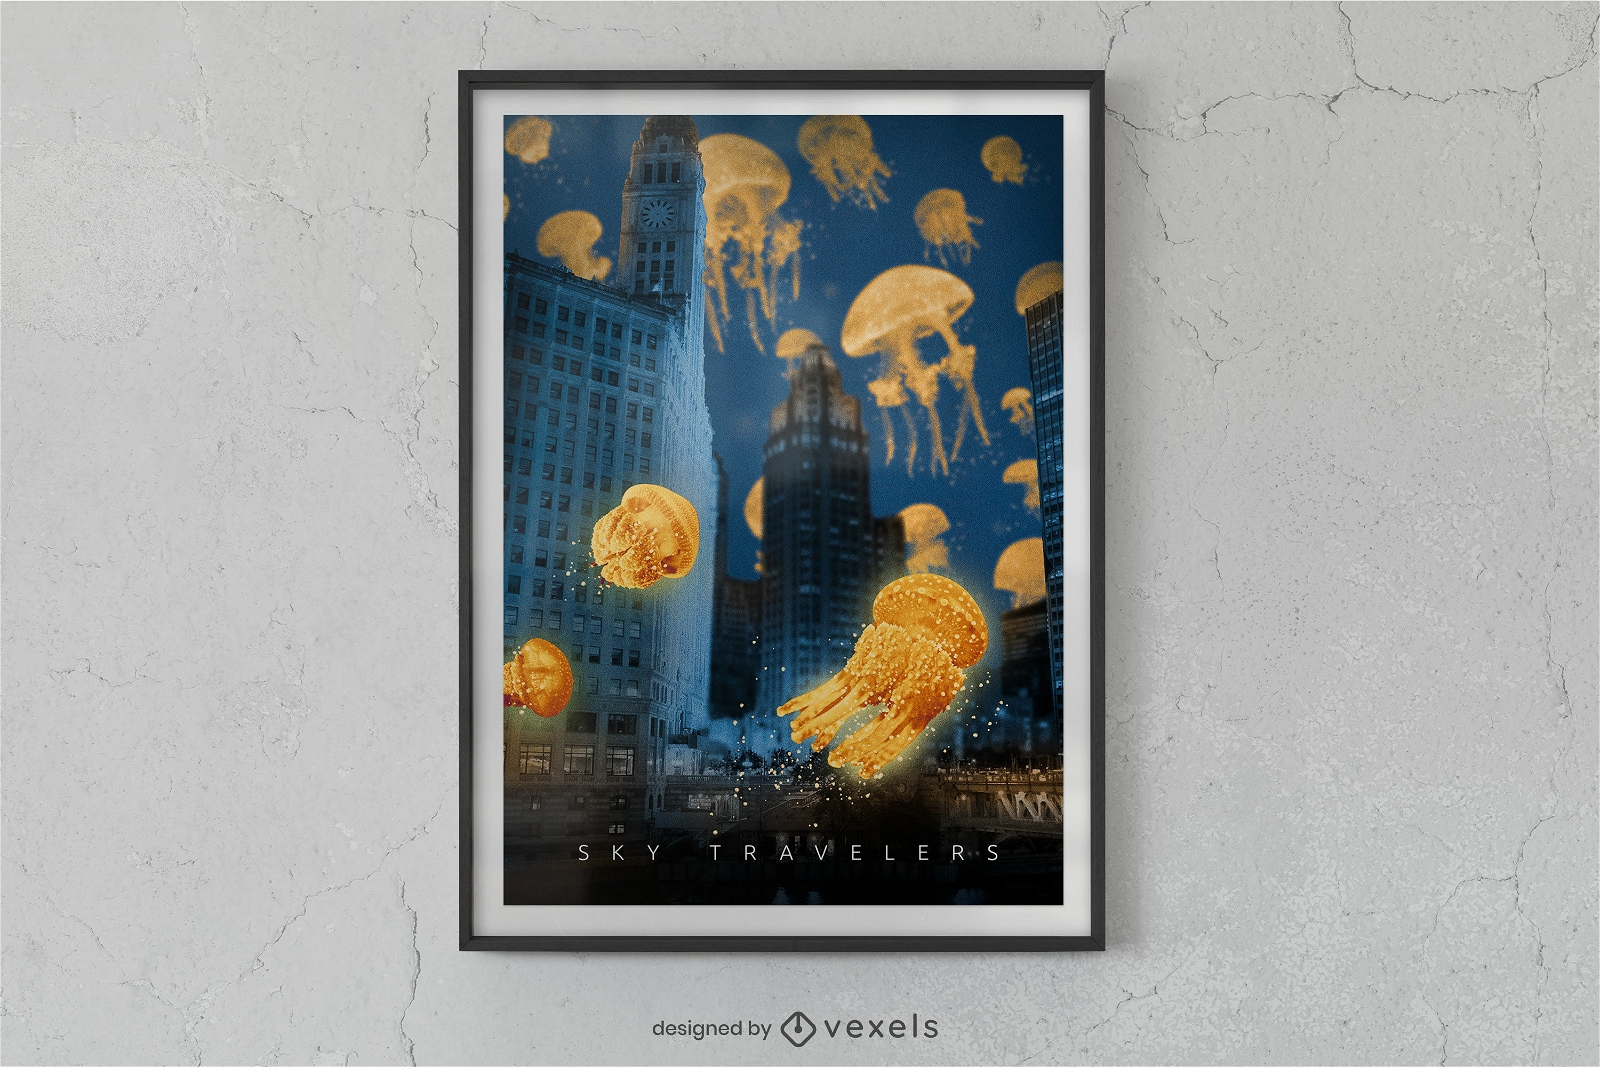 Medusas en un diseño de cartel de la ciudad.